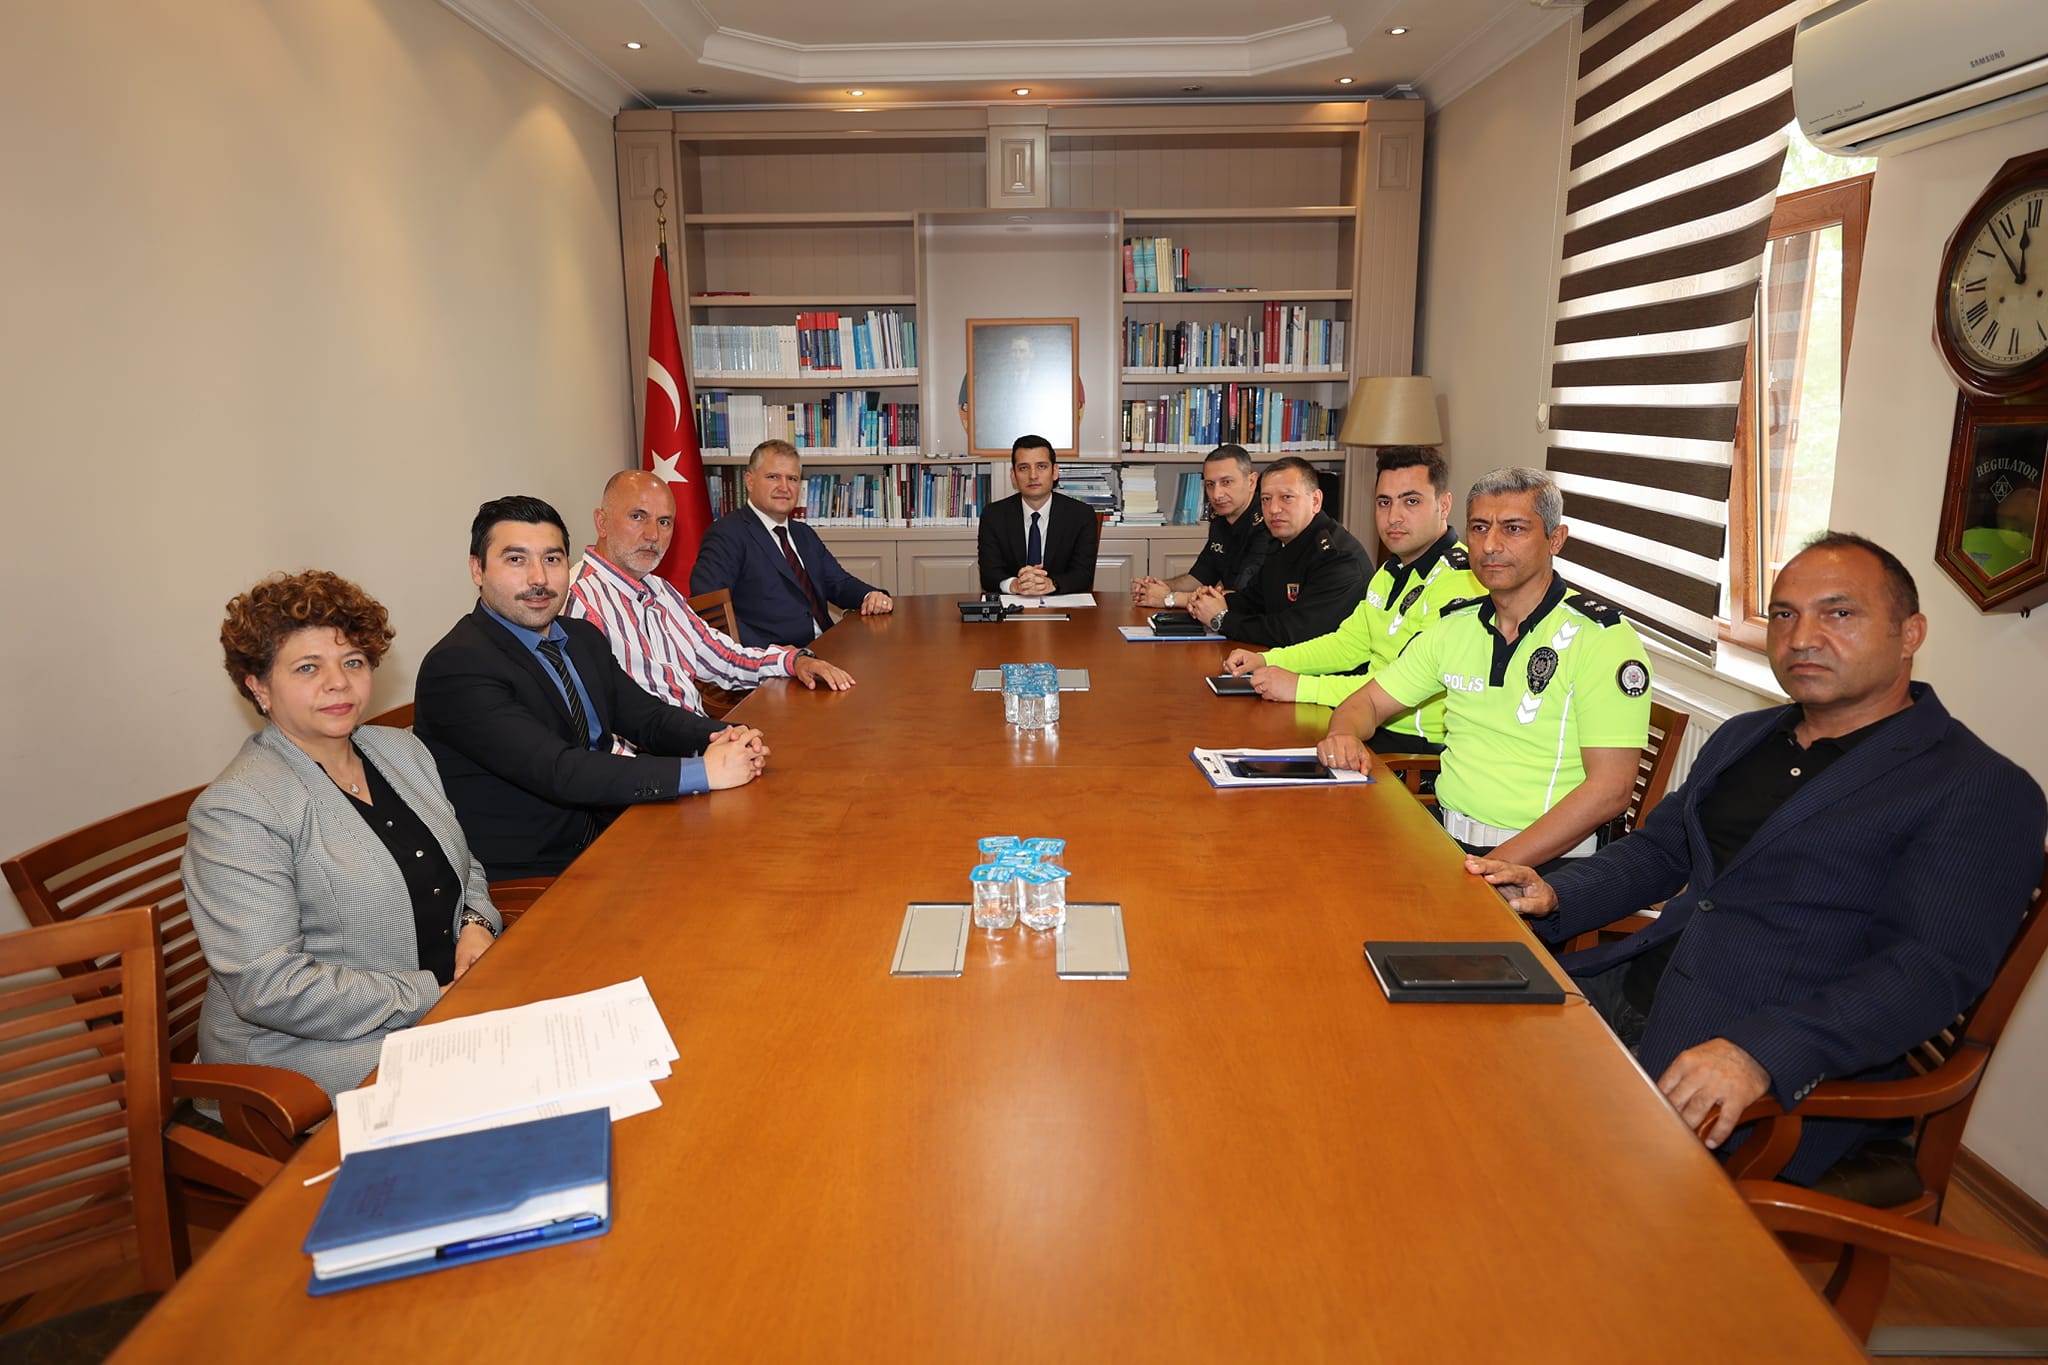 İzmir'in Urla İlçesinde İki Büyük Etkinlik Öncesi Toplantı Yapıldı